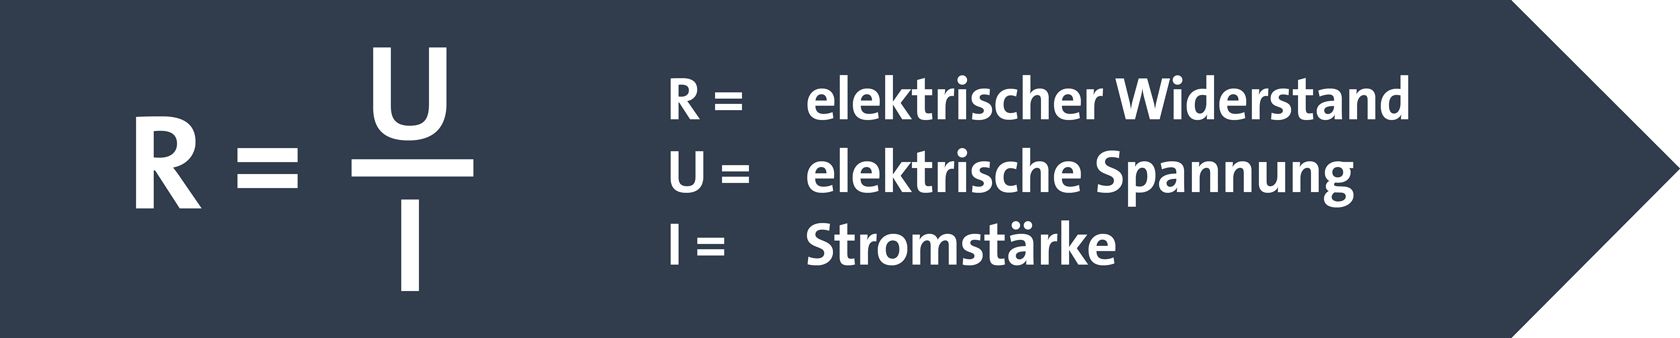 elektrischer Widerstand = elektrische Spannung geteilt durch die Stromstärke